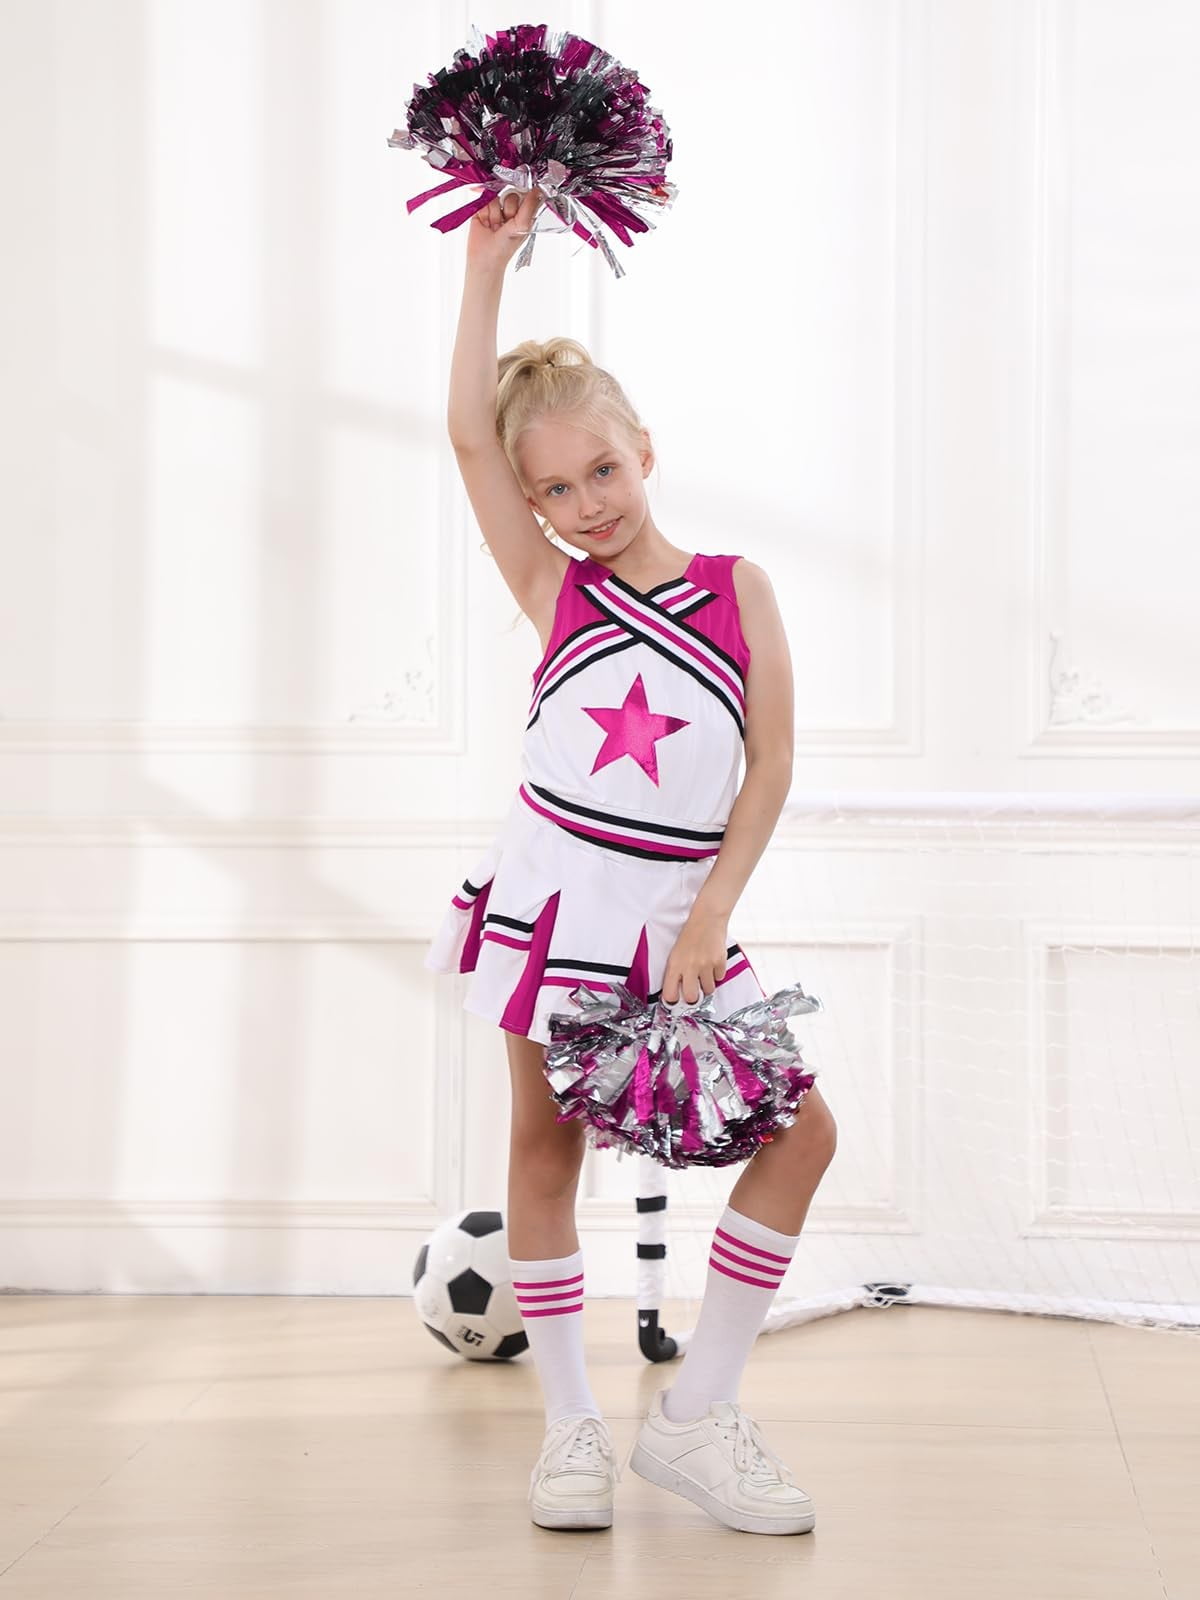 LOLANTA Girls Cheerleading Outfit Cheer Costume For Girls Sleeveless ...